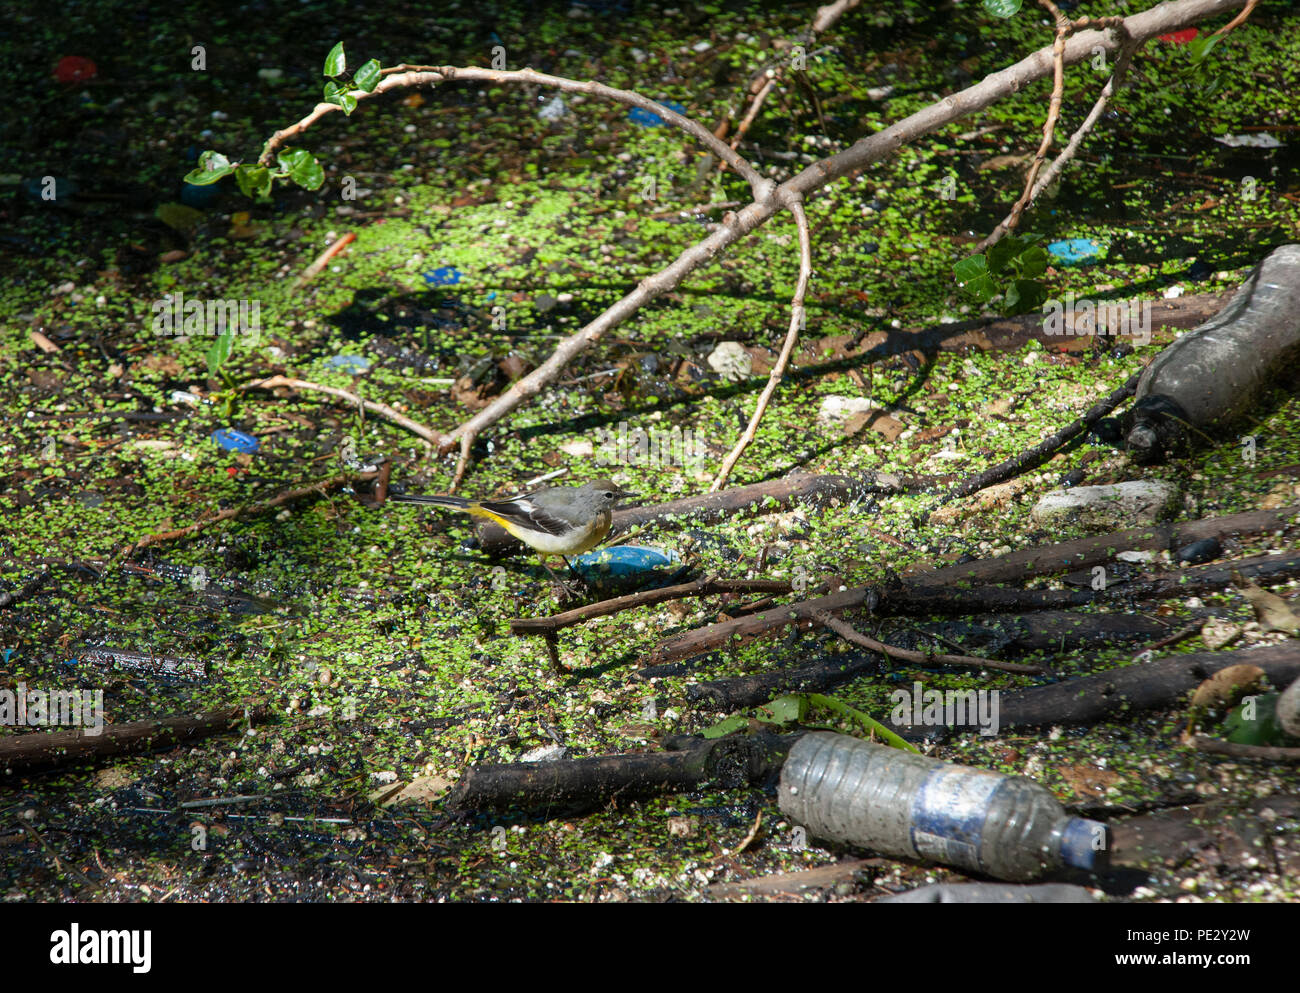 Bergeronnette des adultes, (Motacilla cinerea), perché sur les déchets flottants dans une rivière polluée, Brent, près de réservoir Brent, London, Royaume-Uni Banque D'Images